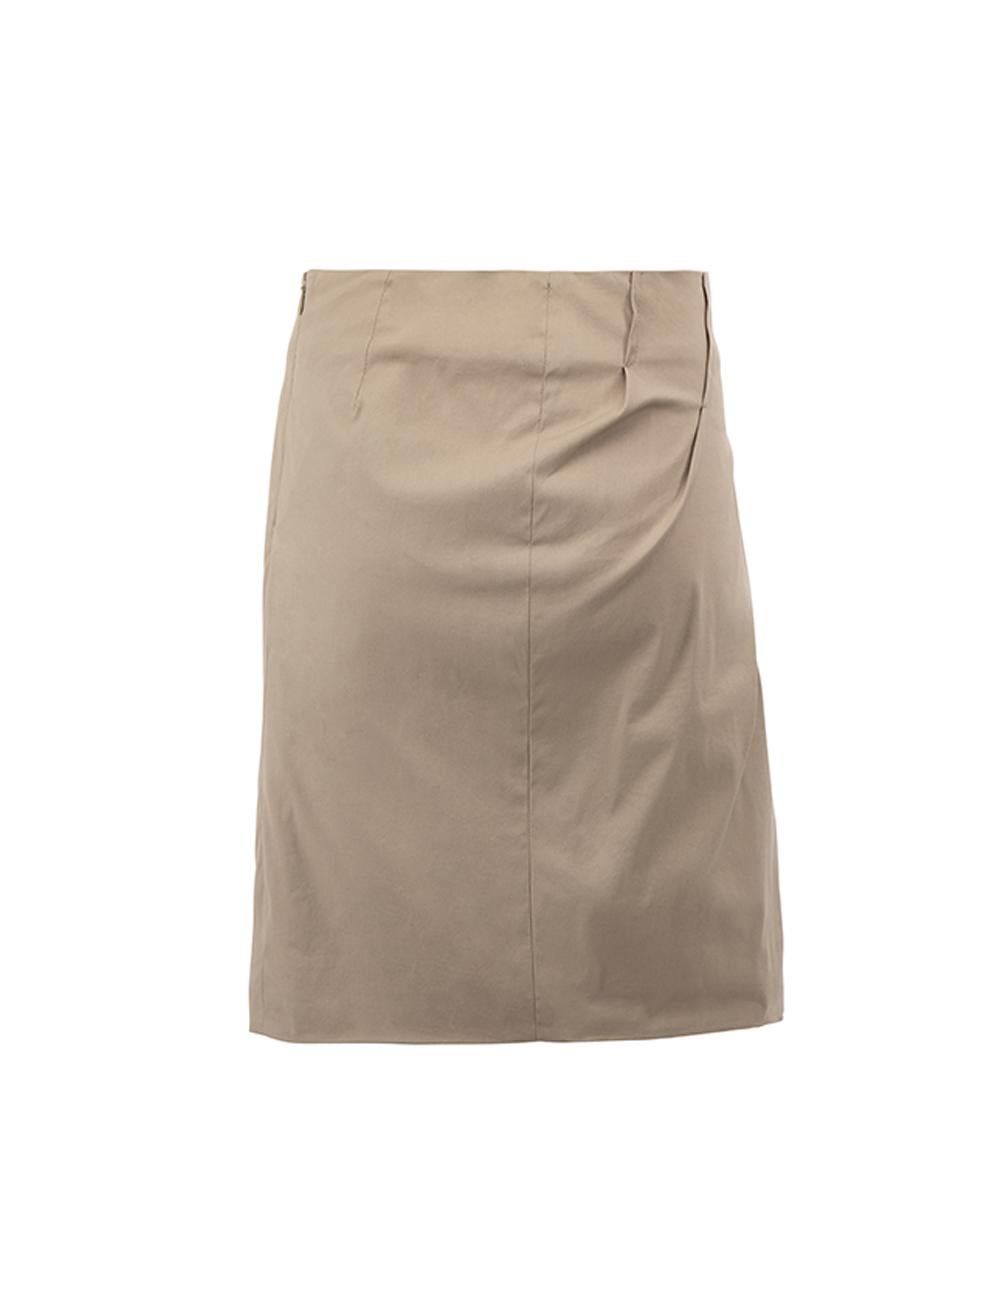 Brunello Cucinelli Women's Khaki Pleat Accent Mini Pencil Skirt In Good Condition For Sale In London, GB